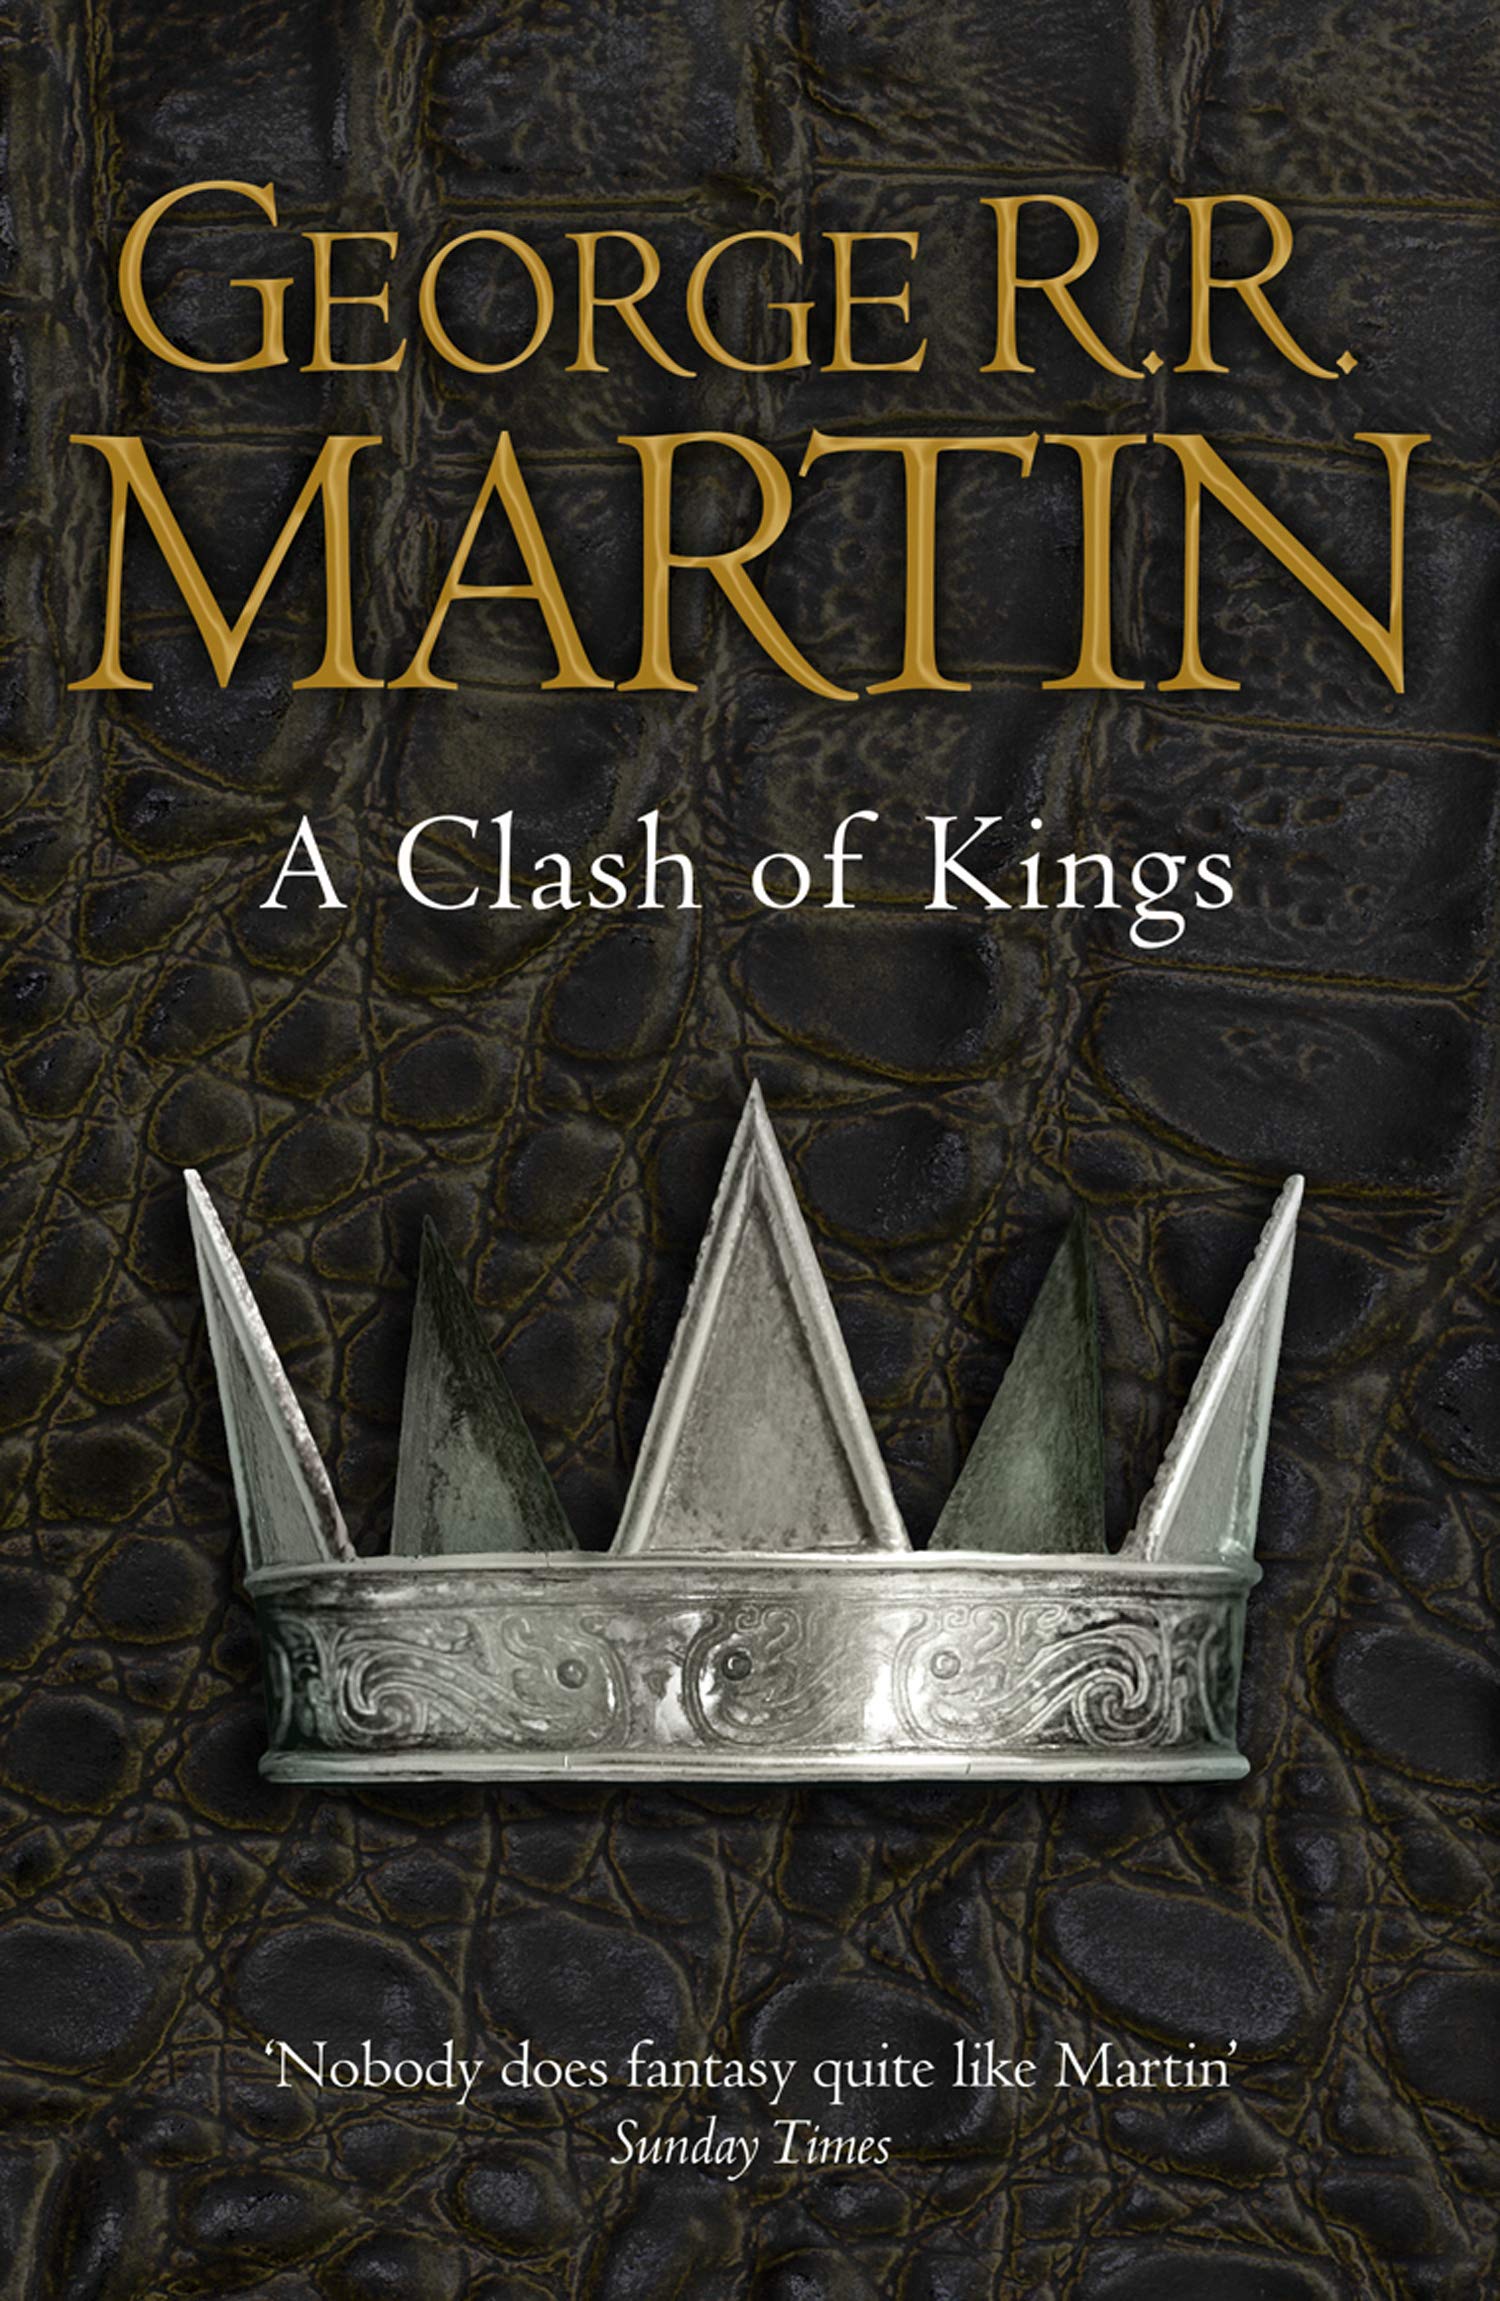 clash of kings audiobook full